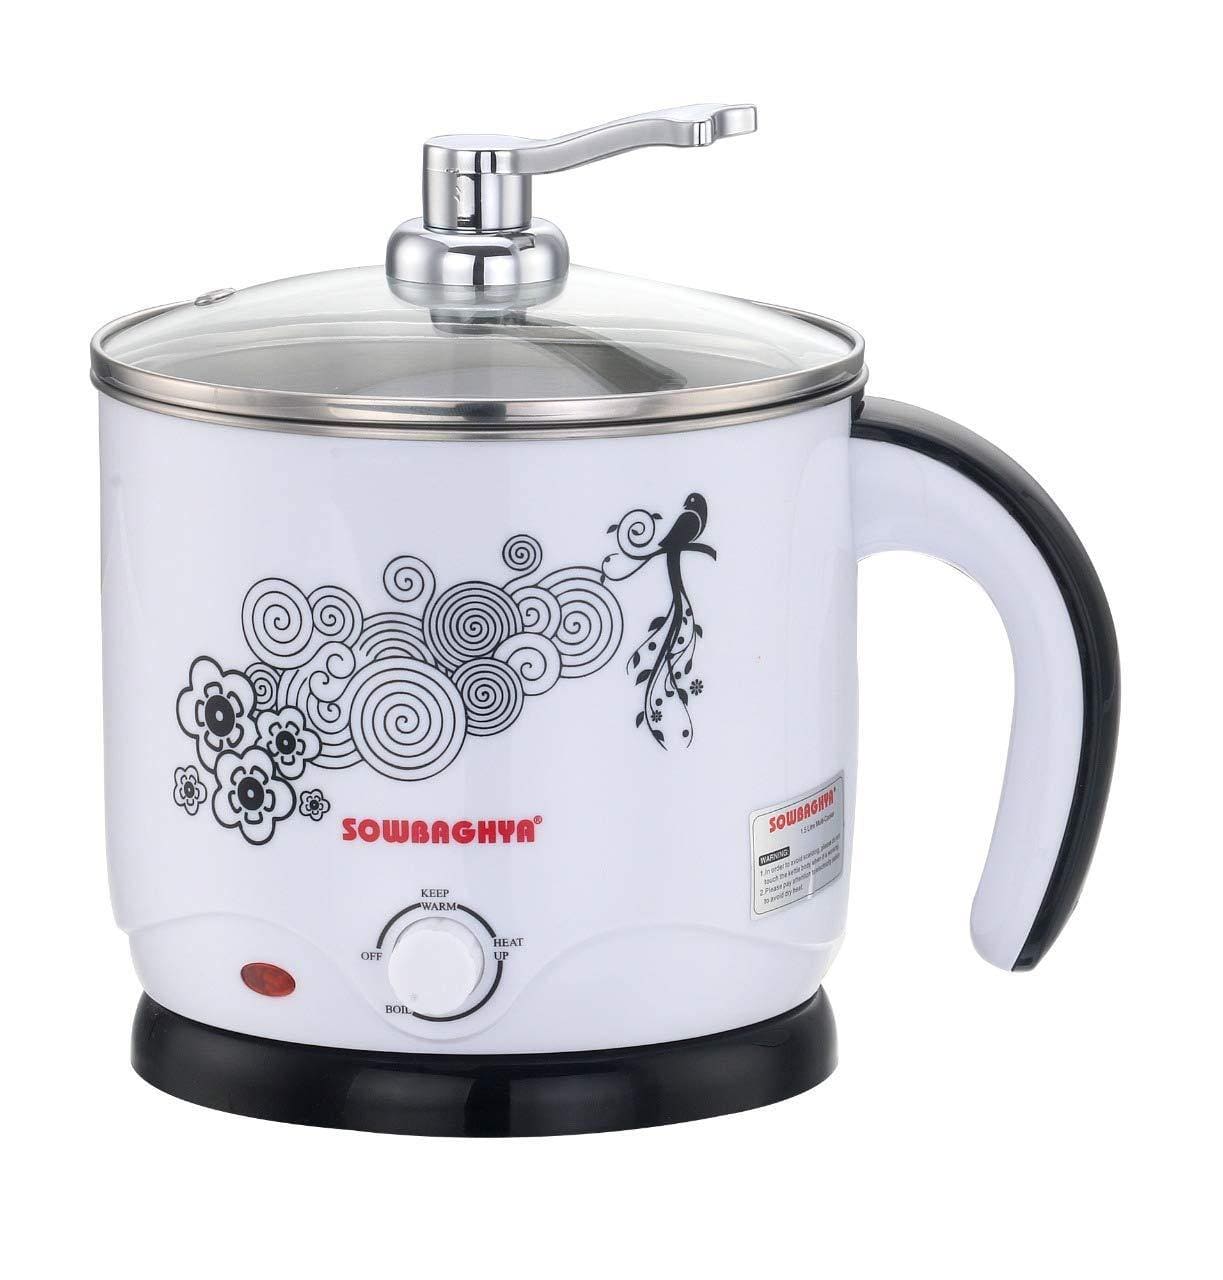 SOWBAGHYA 1.5 L Multicooker, Silver-Home & Kitchen Appliances-dealsplant